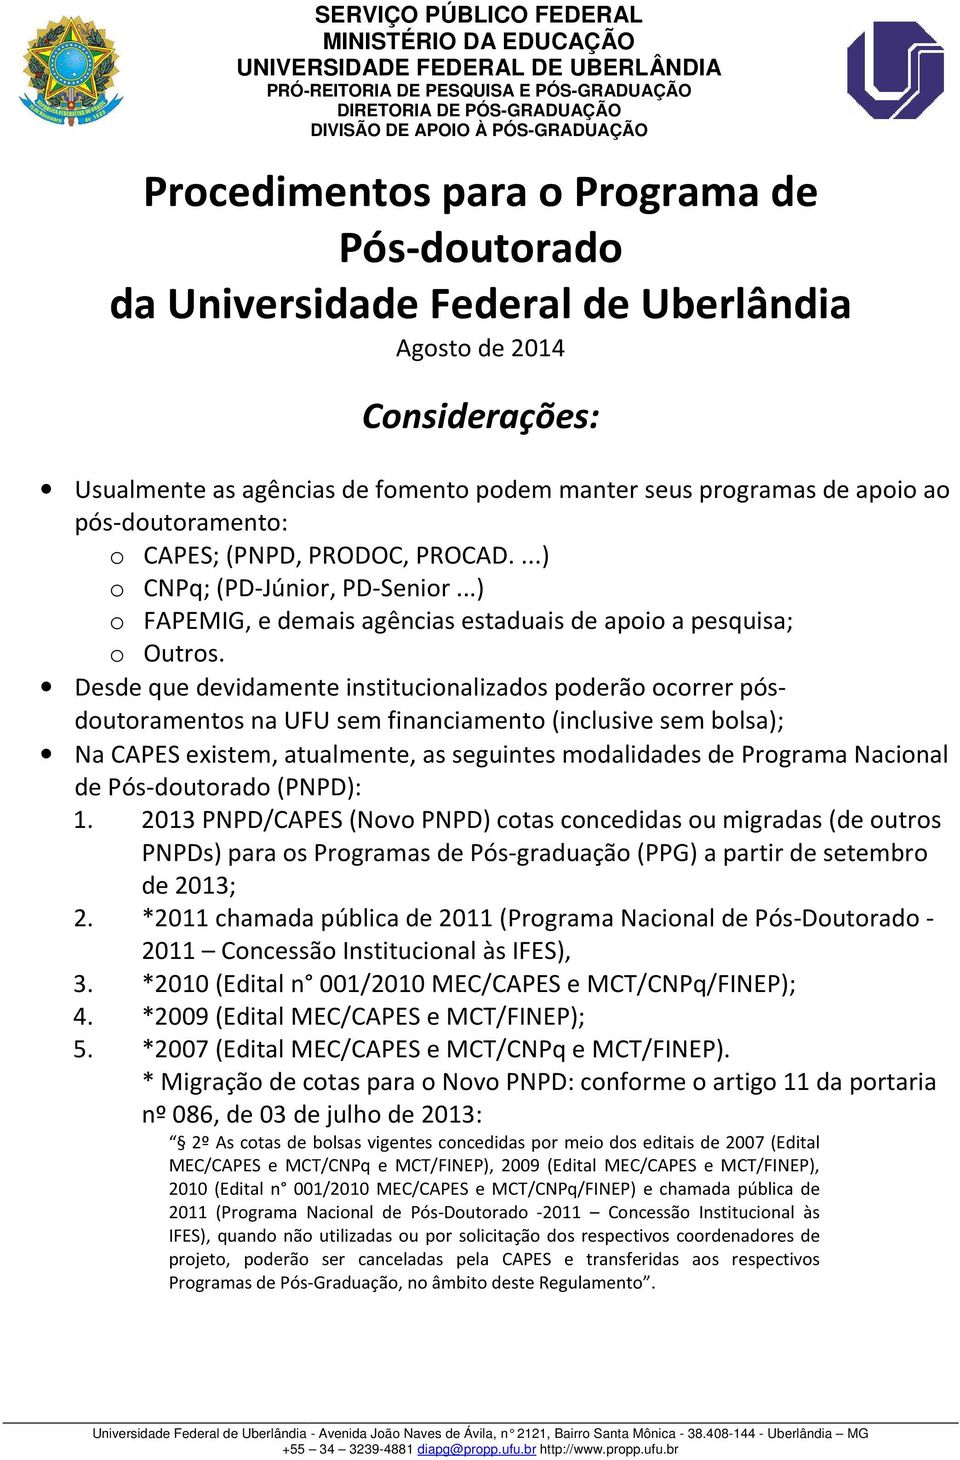 Desde que devidamente institucionalizados poderão ocorrer pós- doutoramentos na UFU sem financiamento (inclusive sem bolsa); Na CAPES existem, atualmente, as seguintes modalidades de Programa